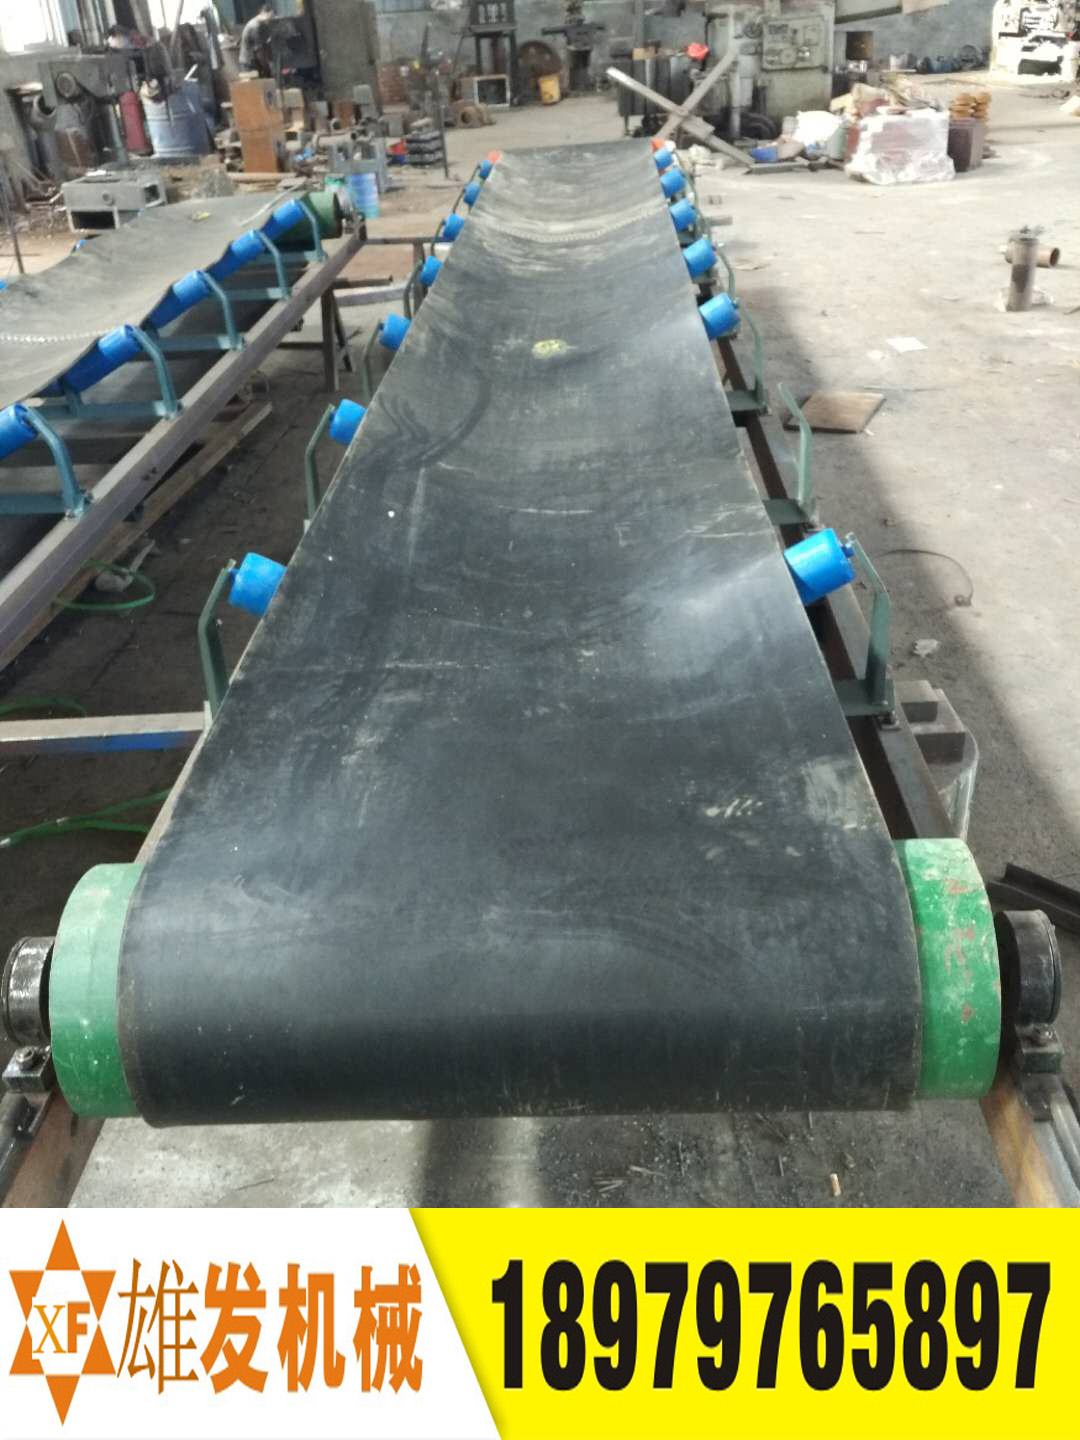 江西石城县橡胶可移动固定式皮带运输机设备价格及生产厂家